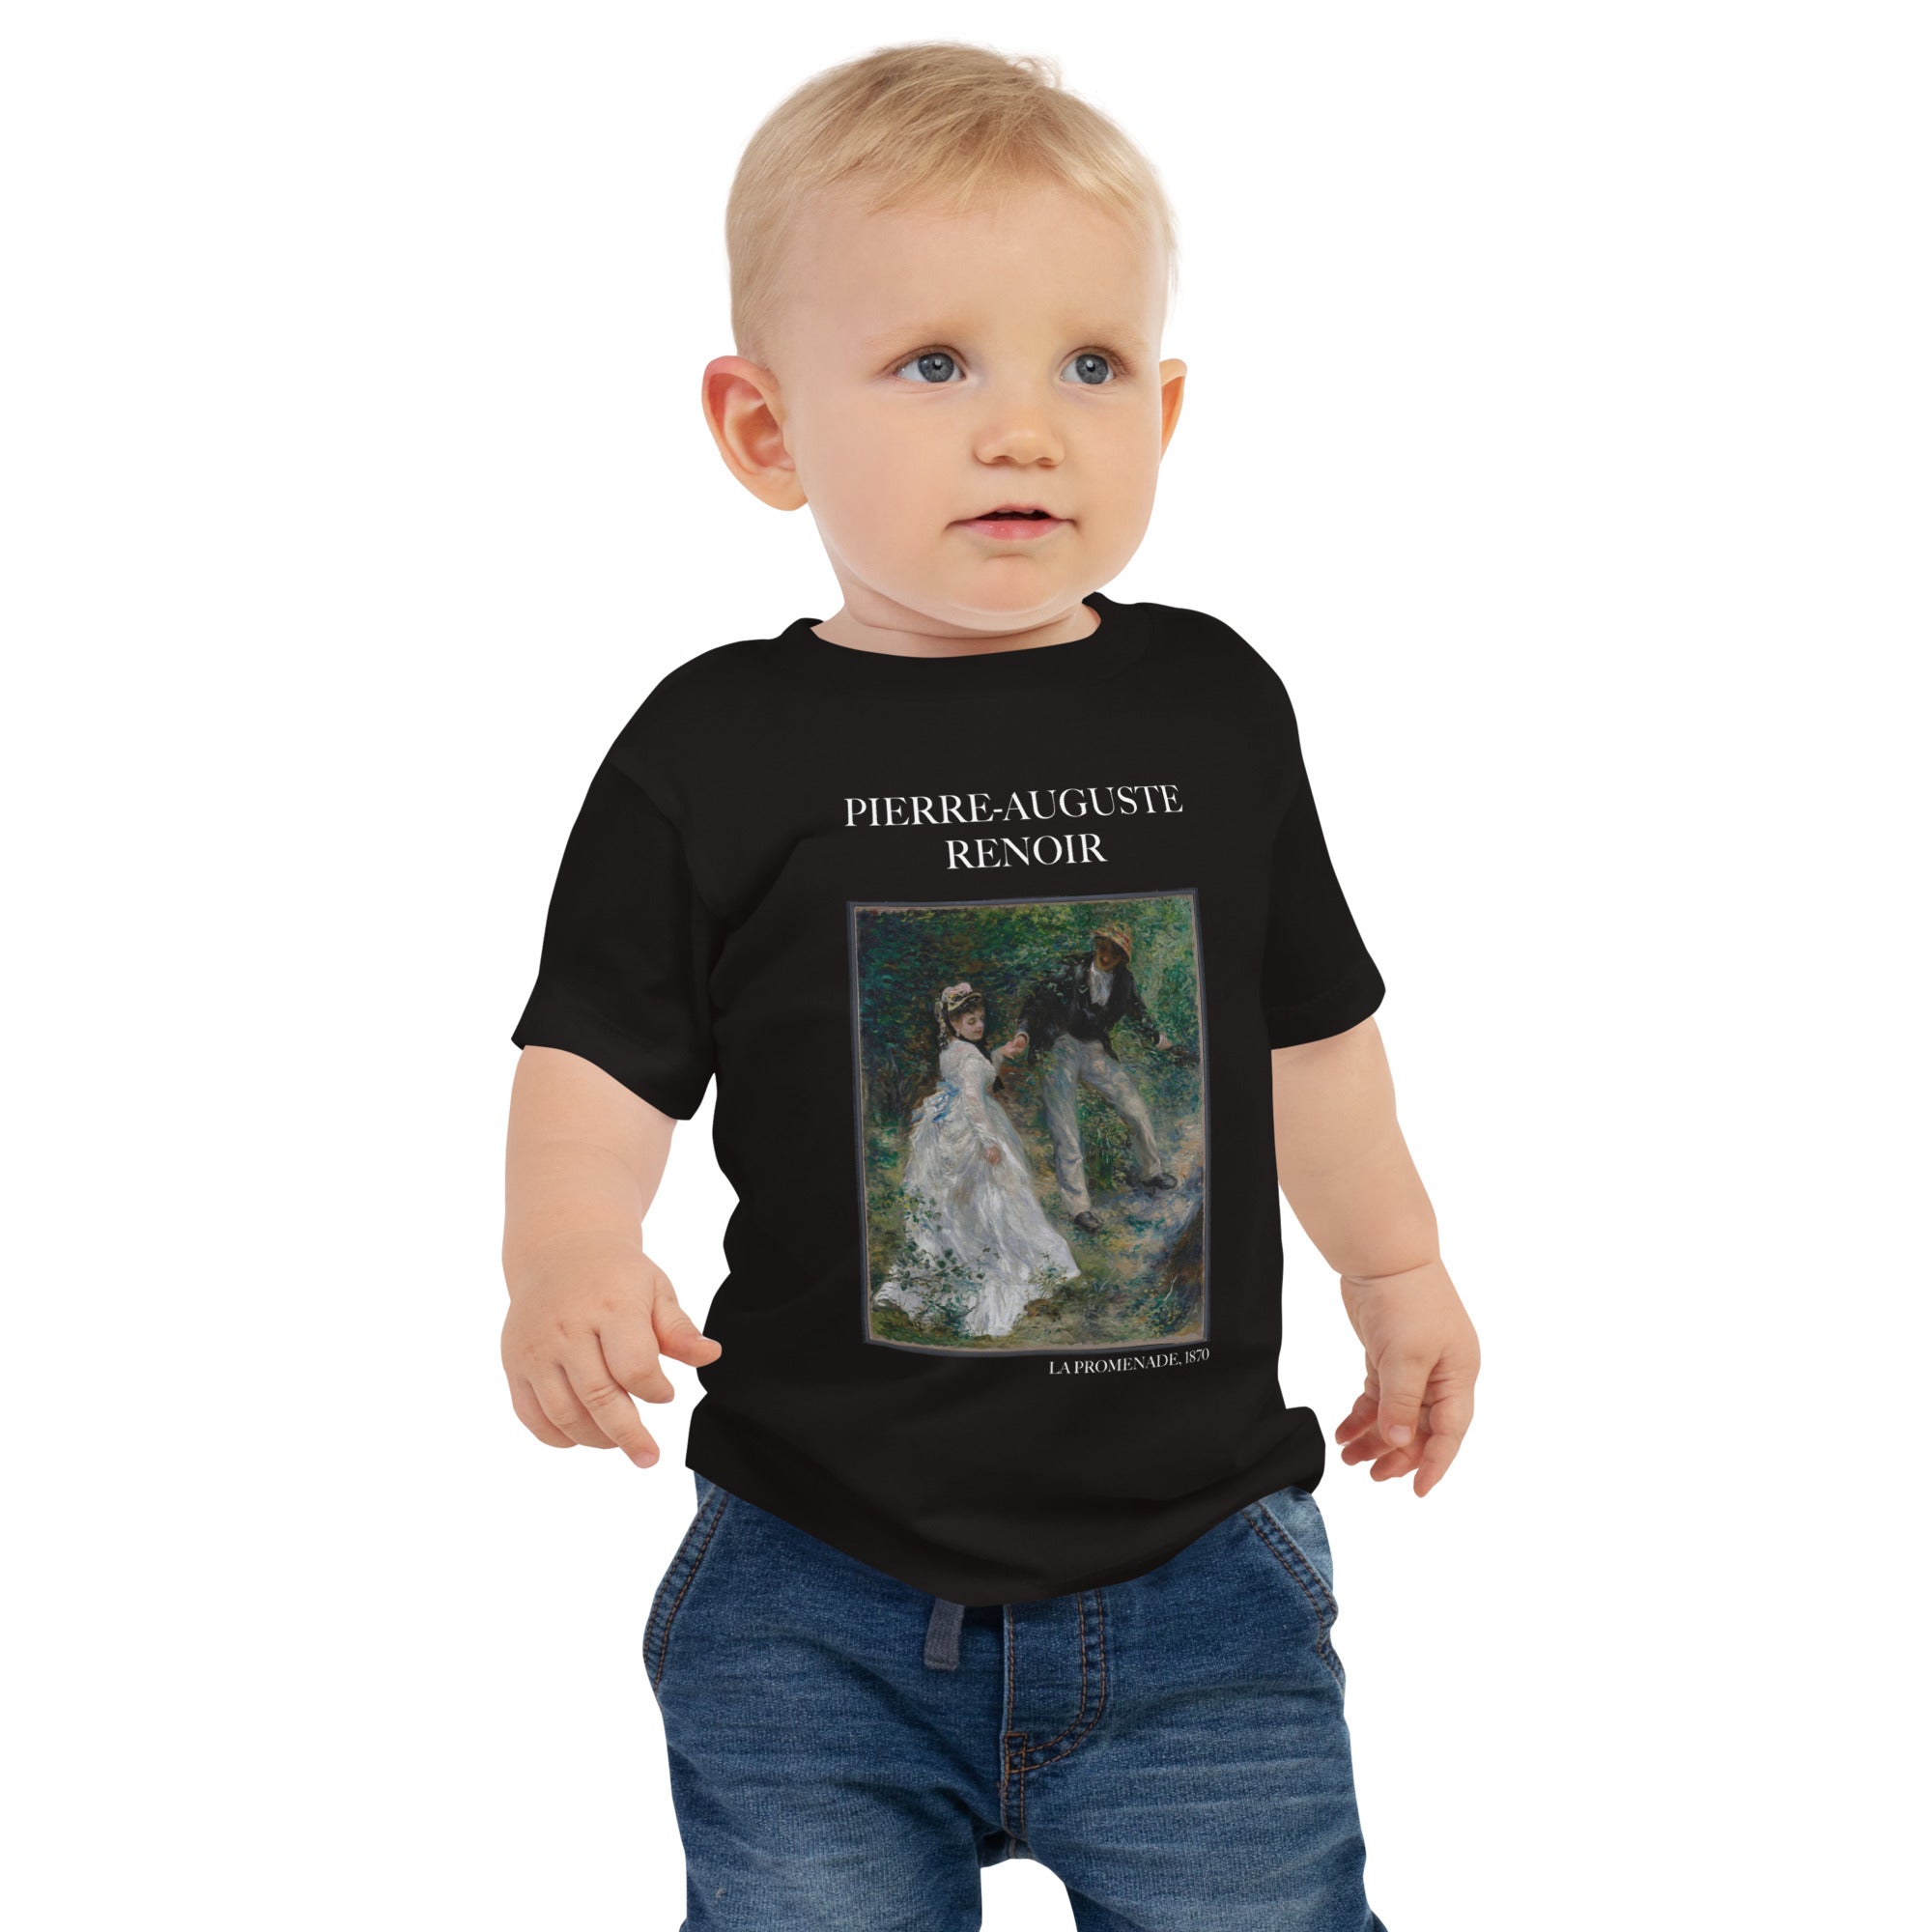 Pierre-Auguste Renoir „La Promenade“ Berühmtes Gemälde Baby-T-Shirt | Premium Baby Art T-Shirt